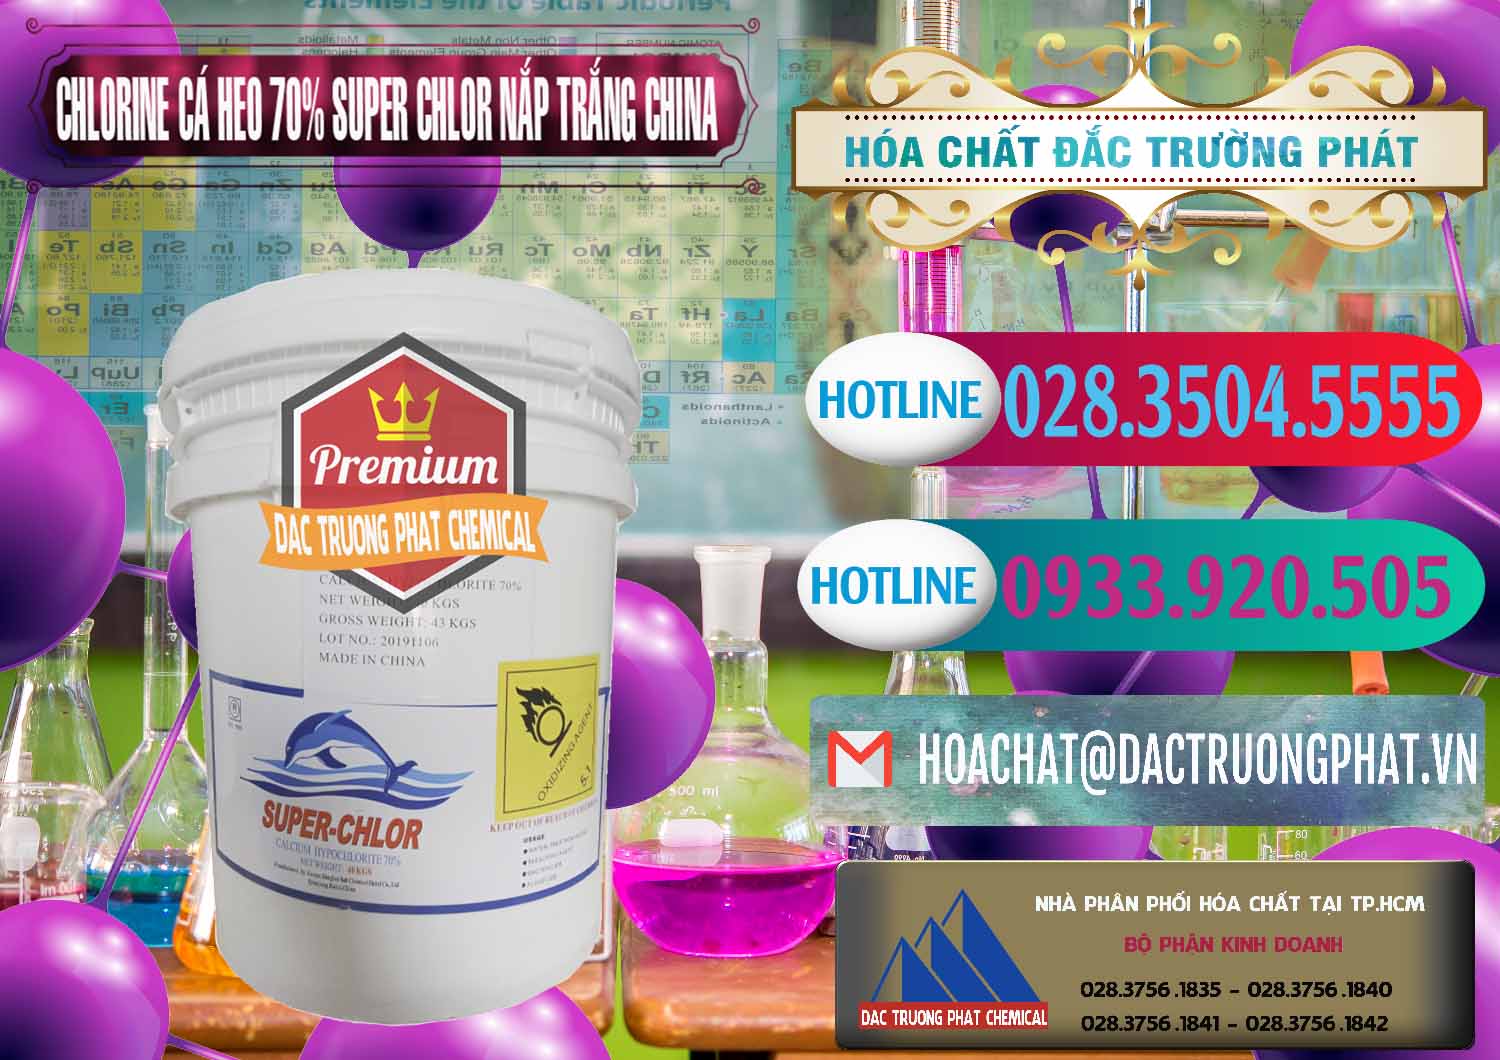 Nơi chuyên cung ứng ( bán ) Clorin - Chlorine Cá Heo 70% Super Chlor Nắp Trắng Trung Quốc China - 0240 - Cty chuyên phân phối và kinh doanh hóa chất tại TP.HCM - truongphat.vn